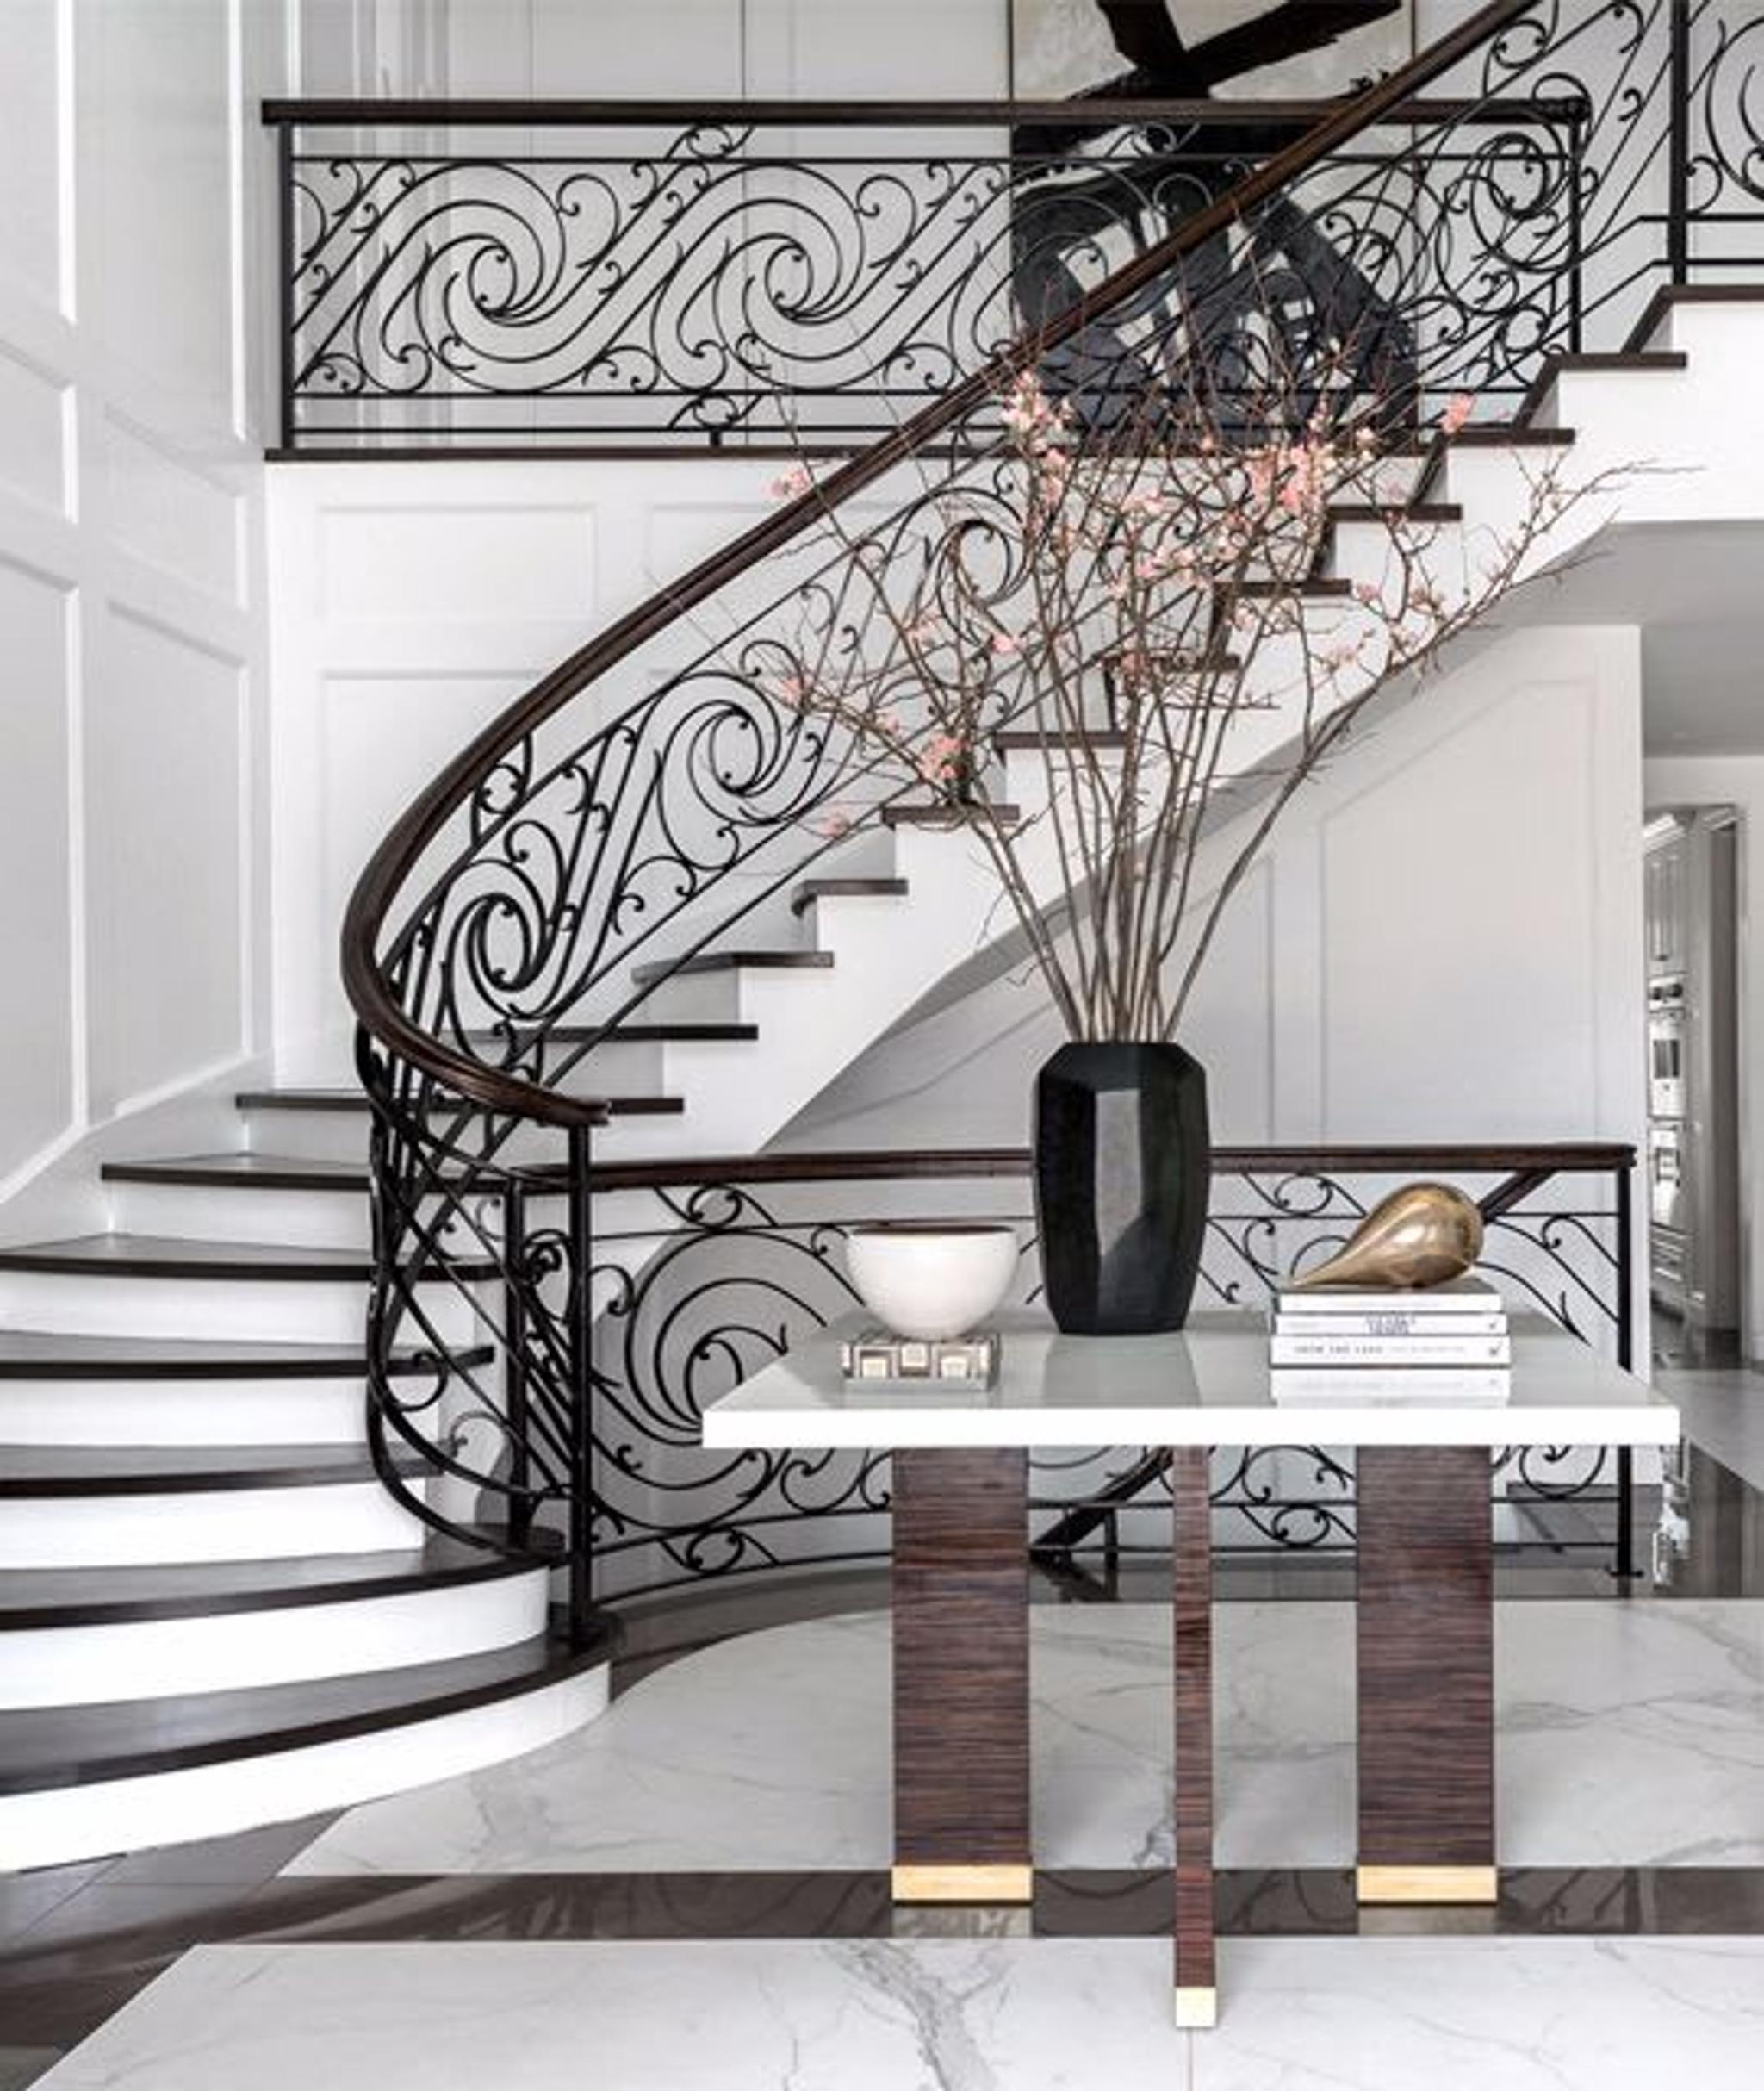 Escalera regia y decoración de la entrada de la refinada residencia de Nueva Jersey decorada por Jordan Carlyle.